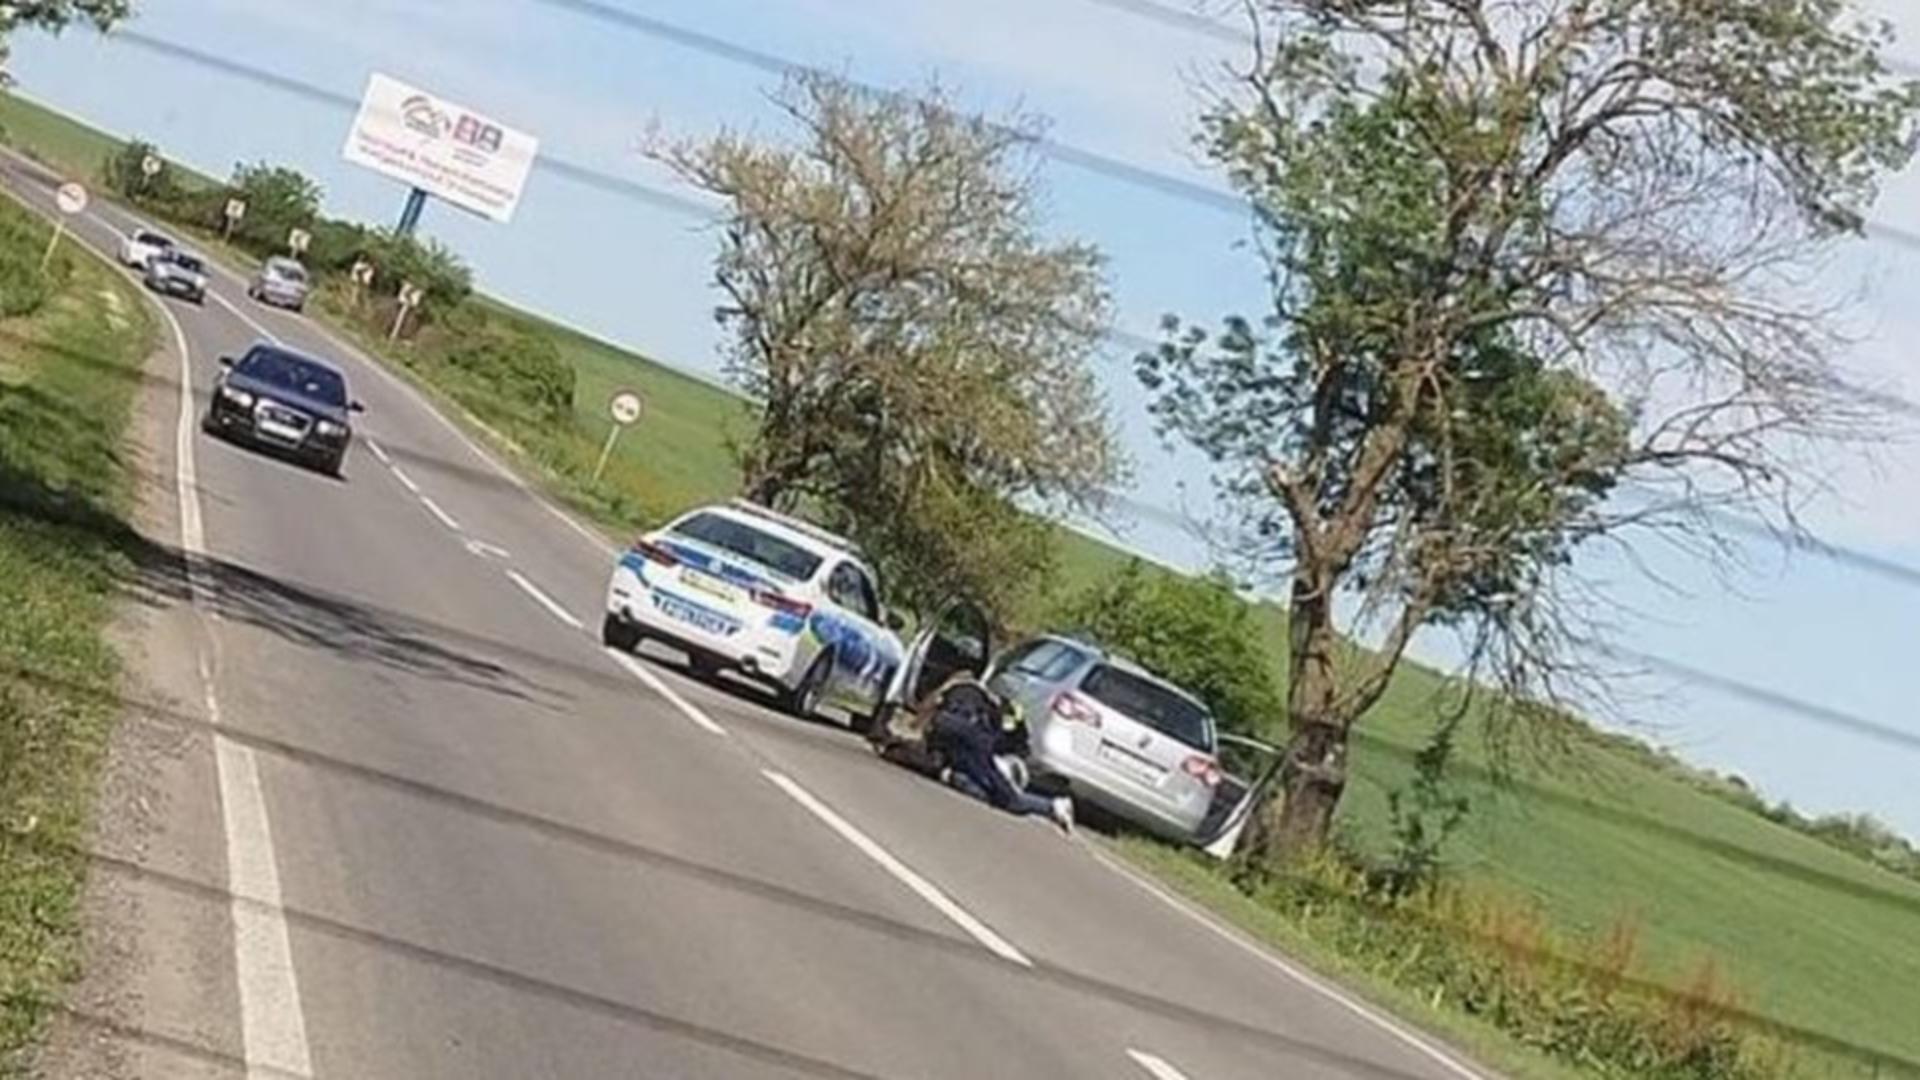 Șofer pus la pământ și încătușat, în trafic. Scenă ȘOCANTĂ pe o șosea dintre Arad și Timișoara - FOTO